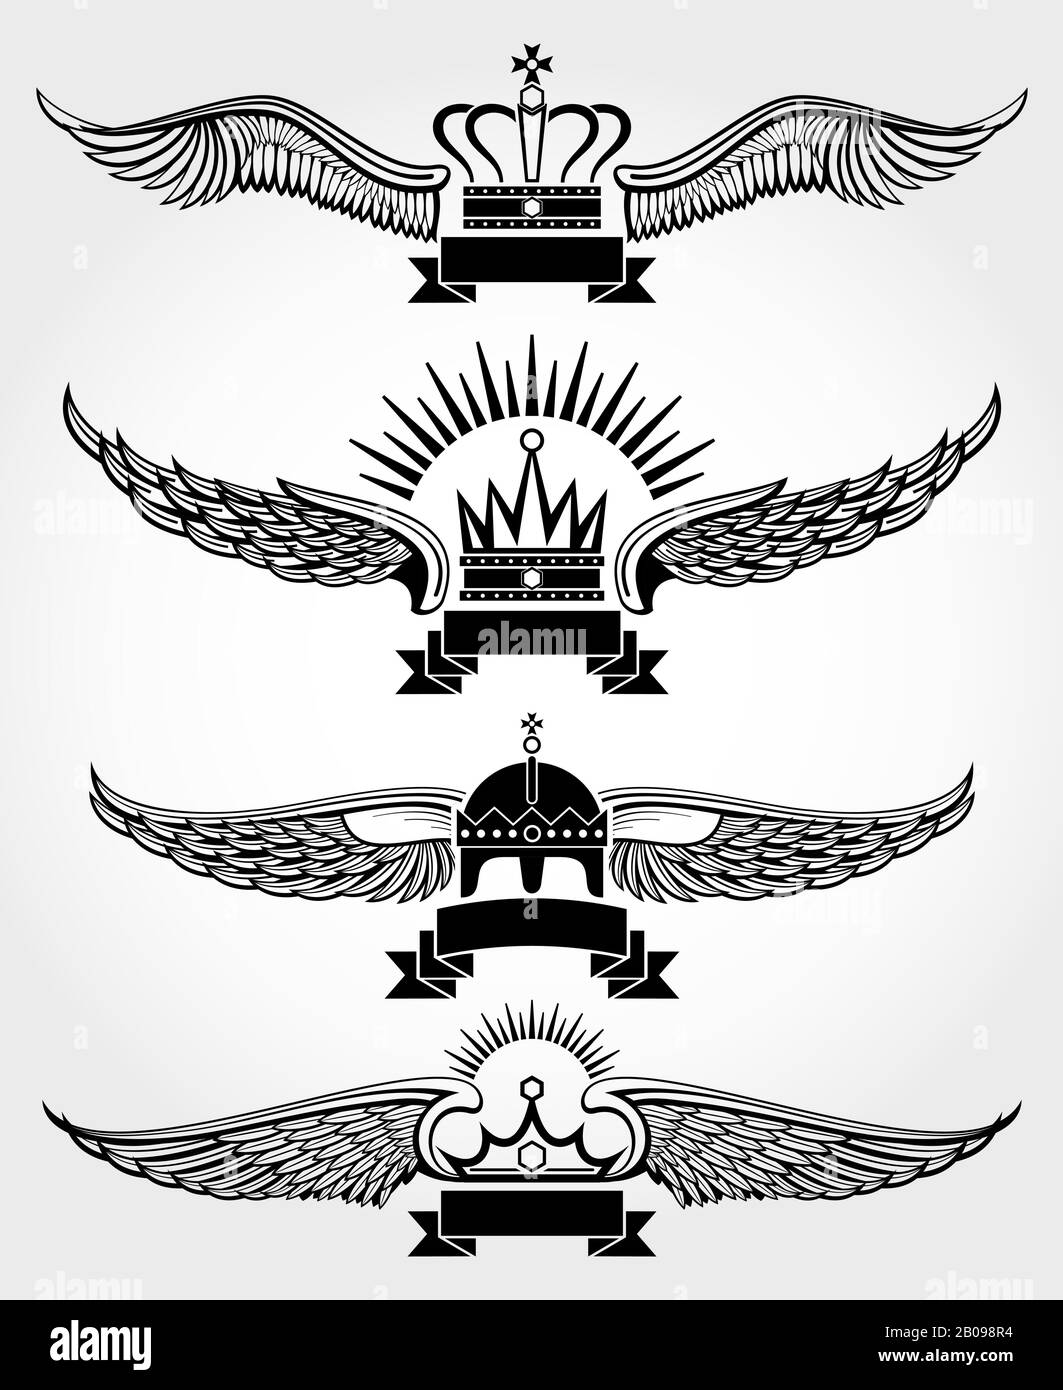 Vektor geflügelte Kronen und Bänder königliche Logo-Vorlagen in schwarz-weißer Abbildung Stock Vektor